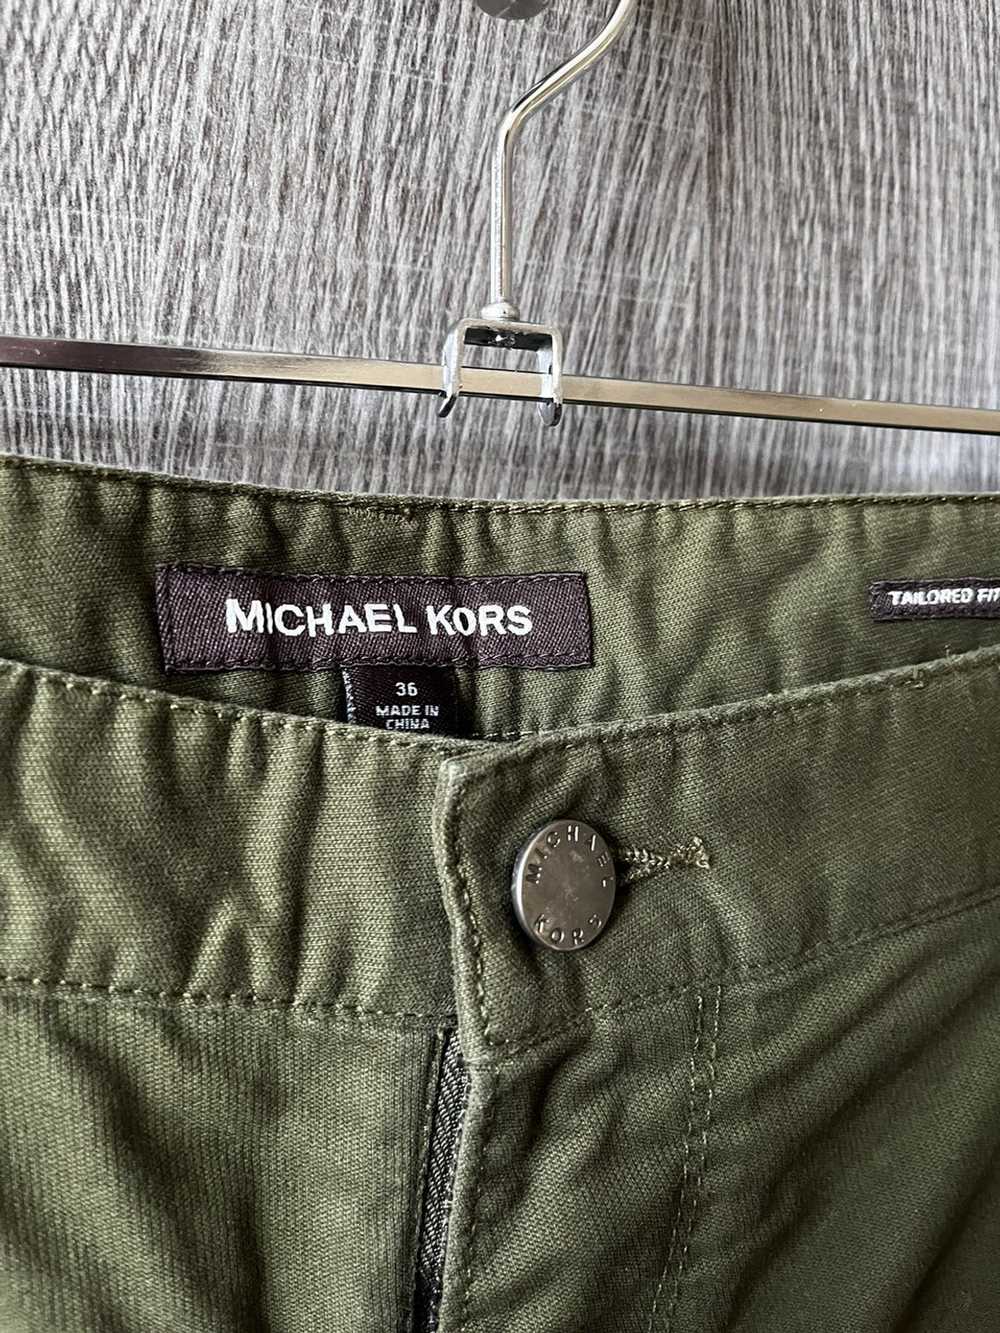 Michael Kors Men’s Michael Kors tailored fit pant… - image 1